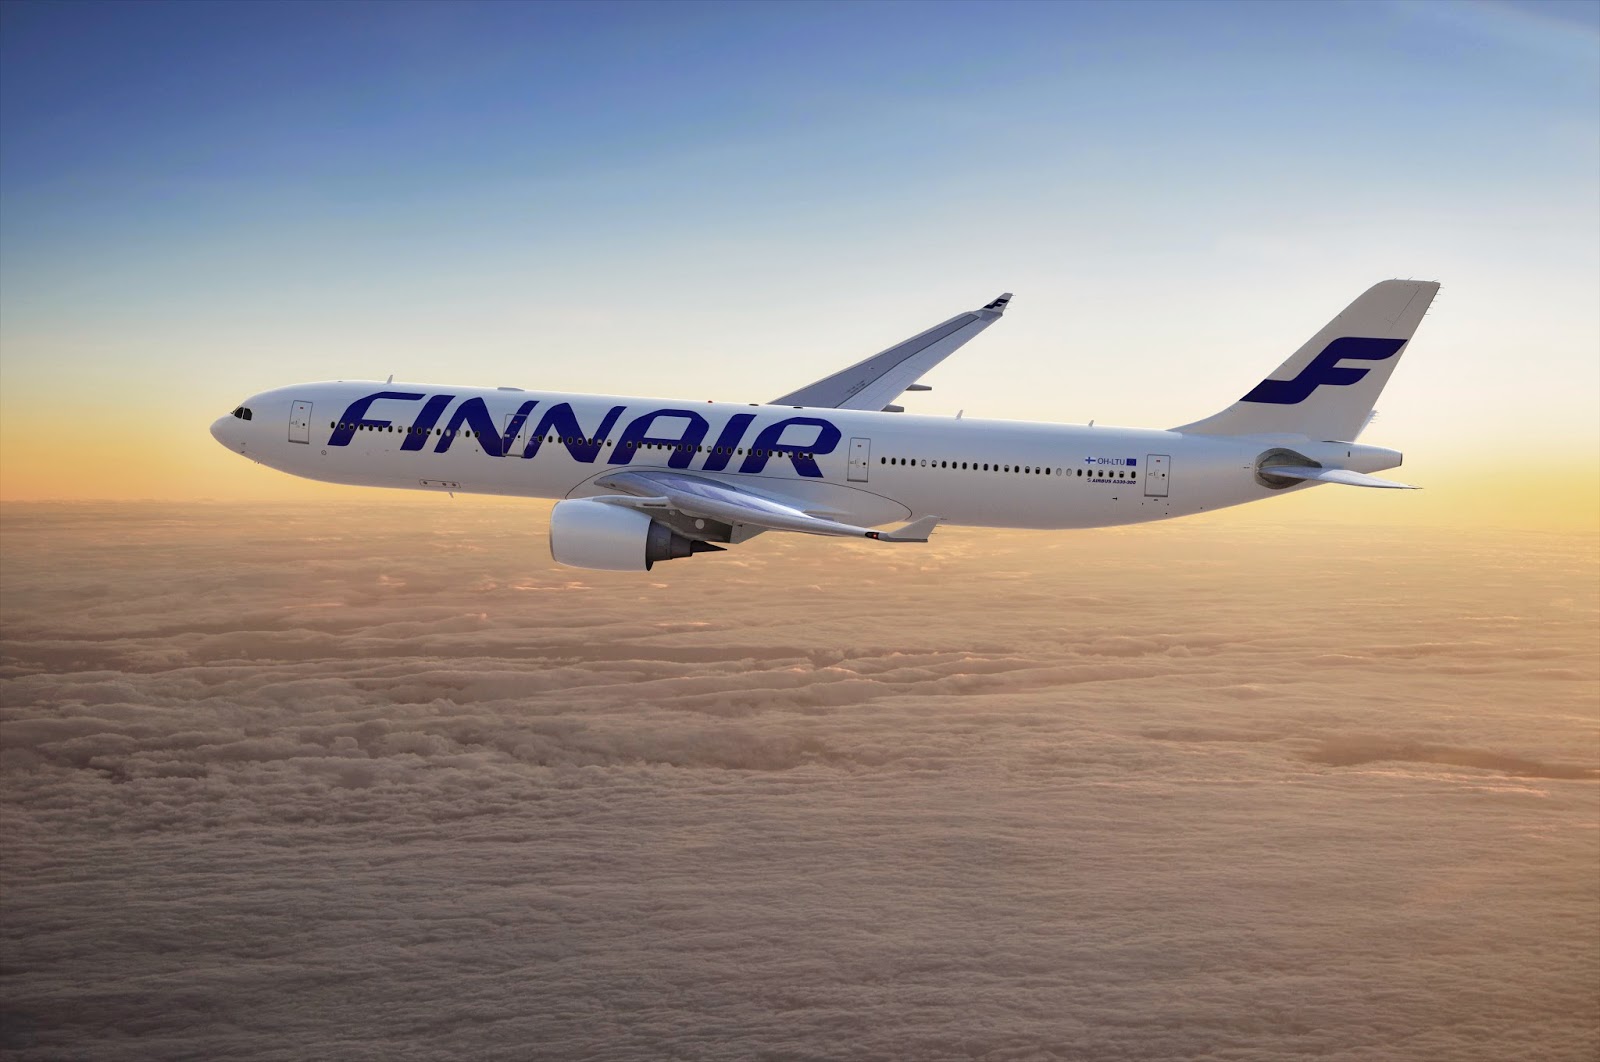 Achetez aux enchères votre place en Business avec Finnair